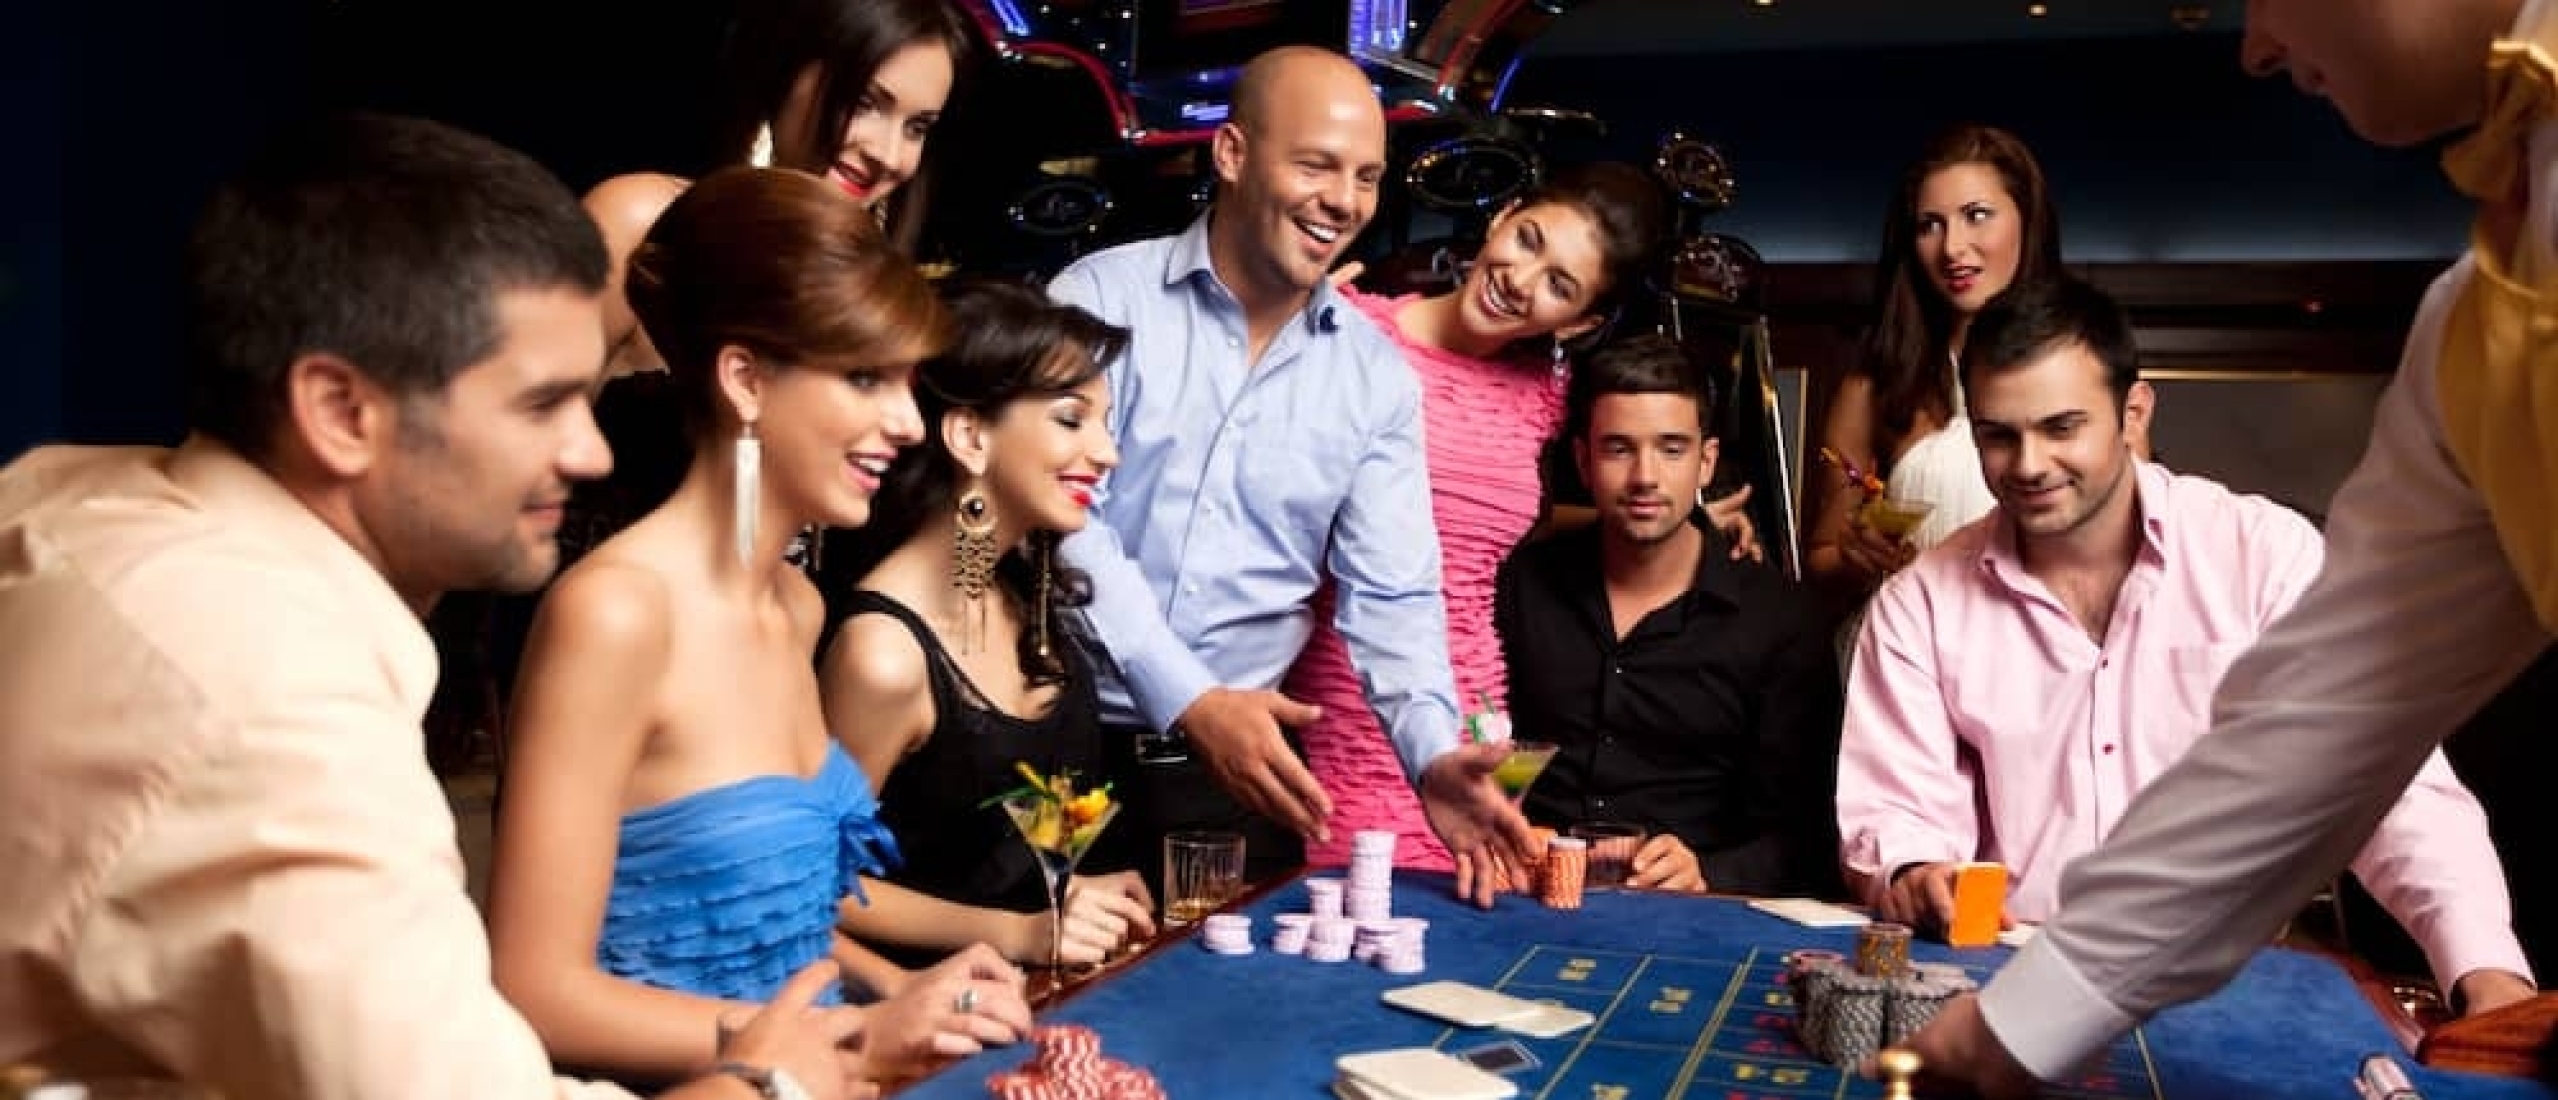 Online Casino Spelen: Kies een betrouwbaar online casino